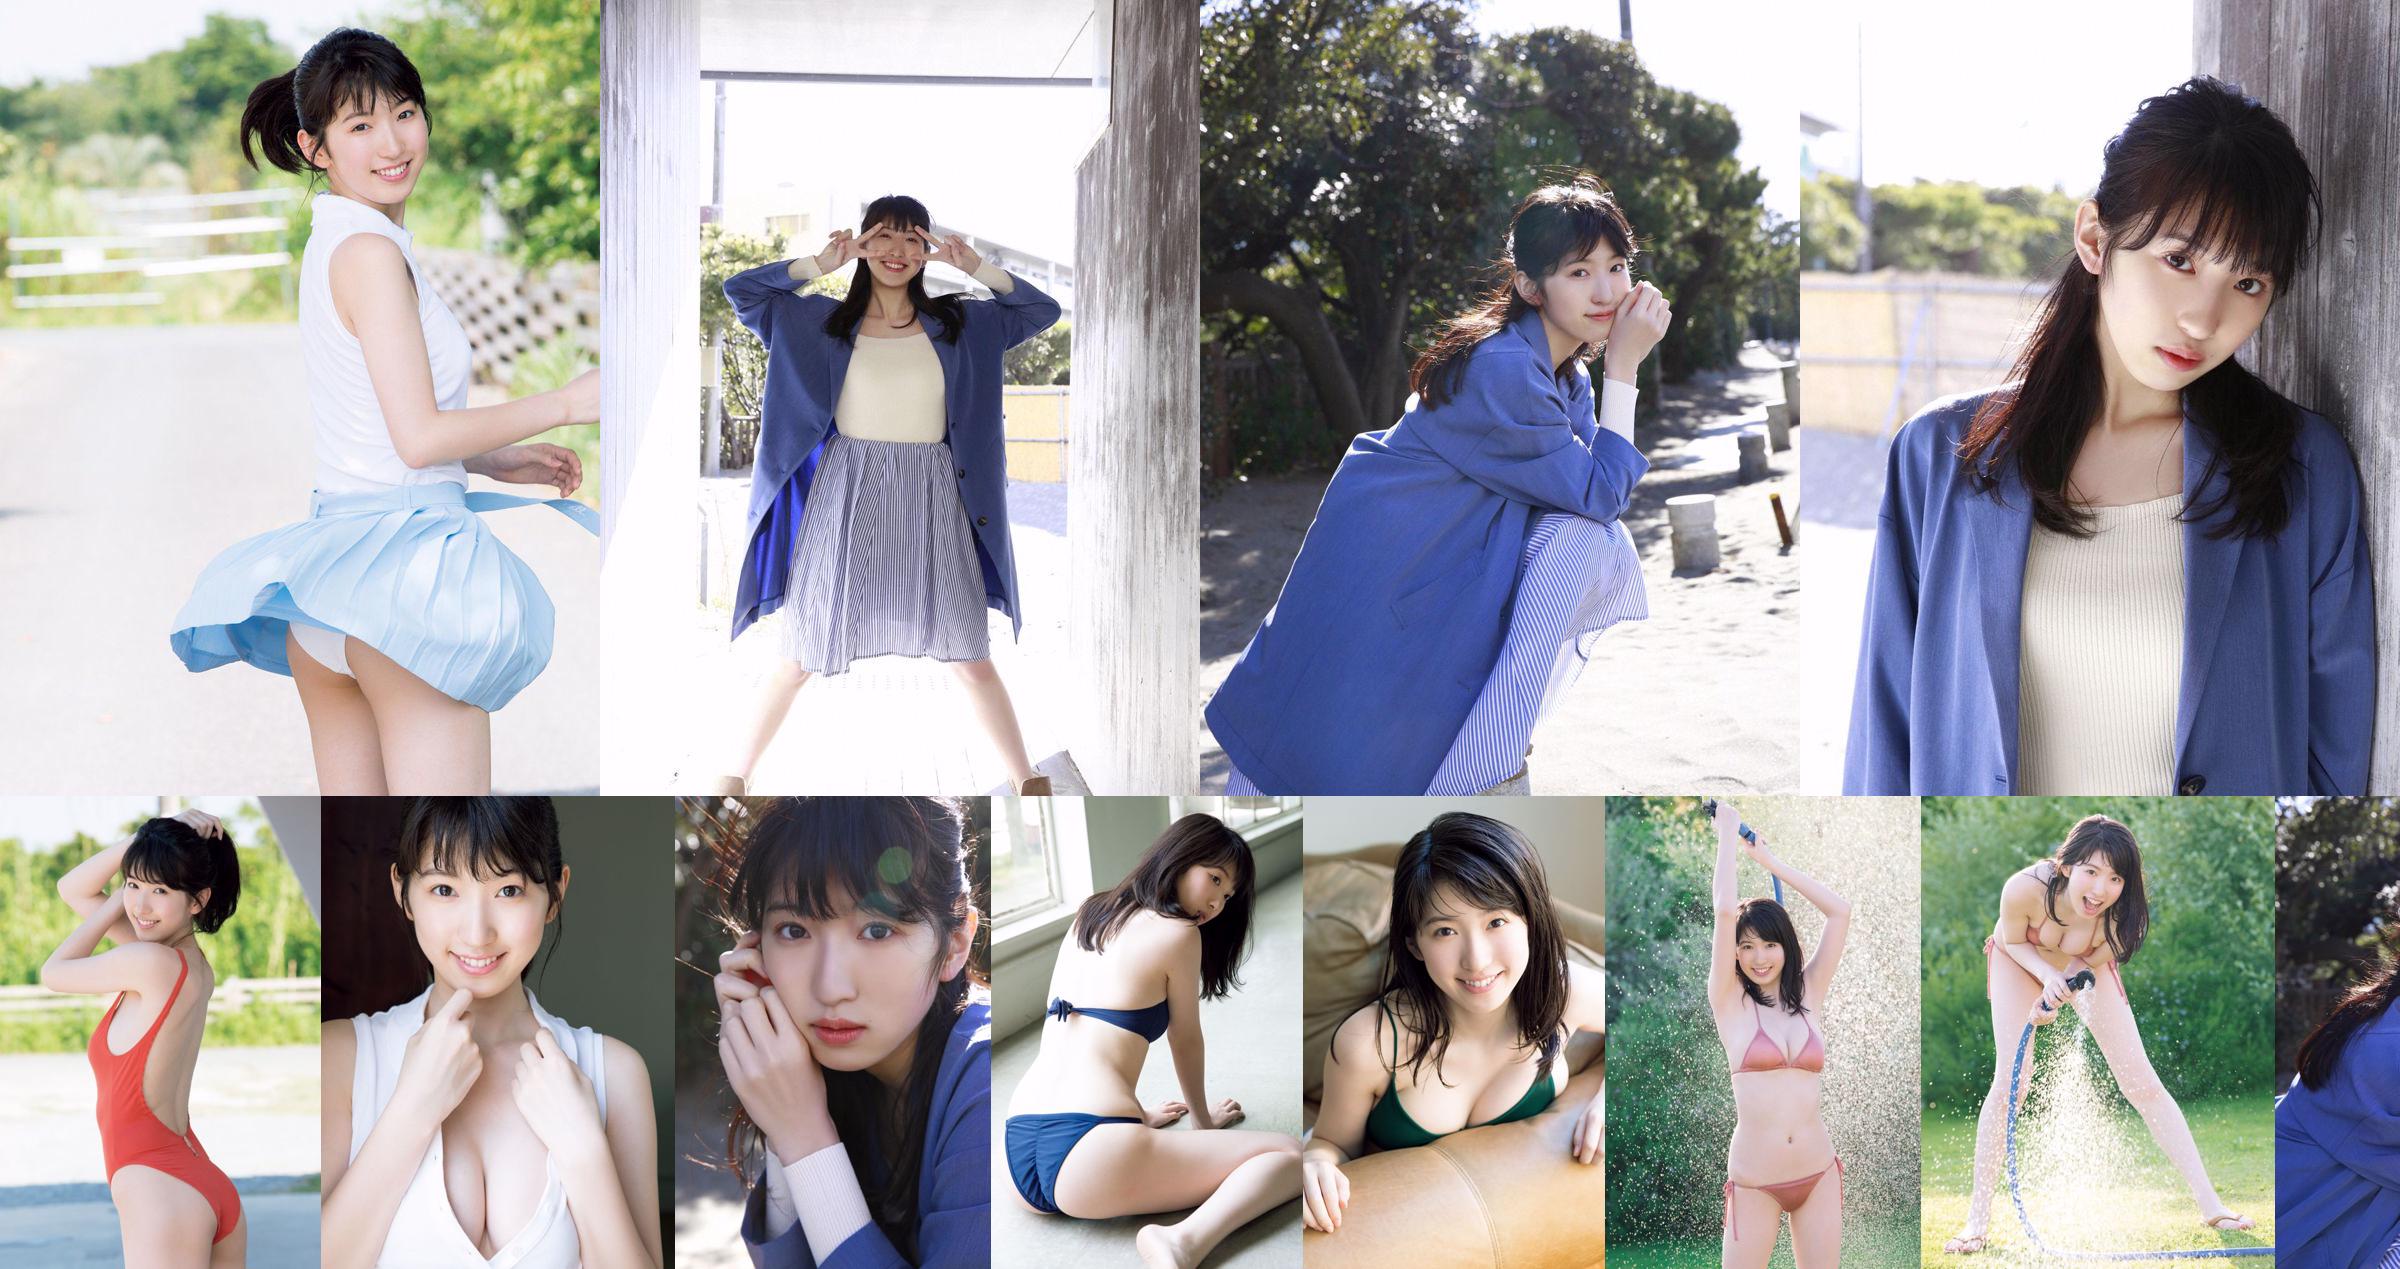 [PIĄTEK] 《Shuka Saito 22-letni pierwszy kostium kąpielowy ekskluzywne wydanie cennego kroju popularnego aktora głosowego z wielką eksplozją》 Zdjęcie No.85de14 Strona 2